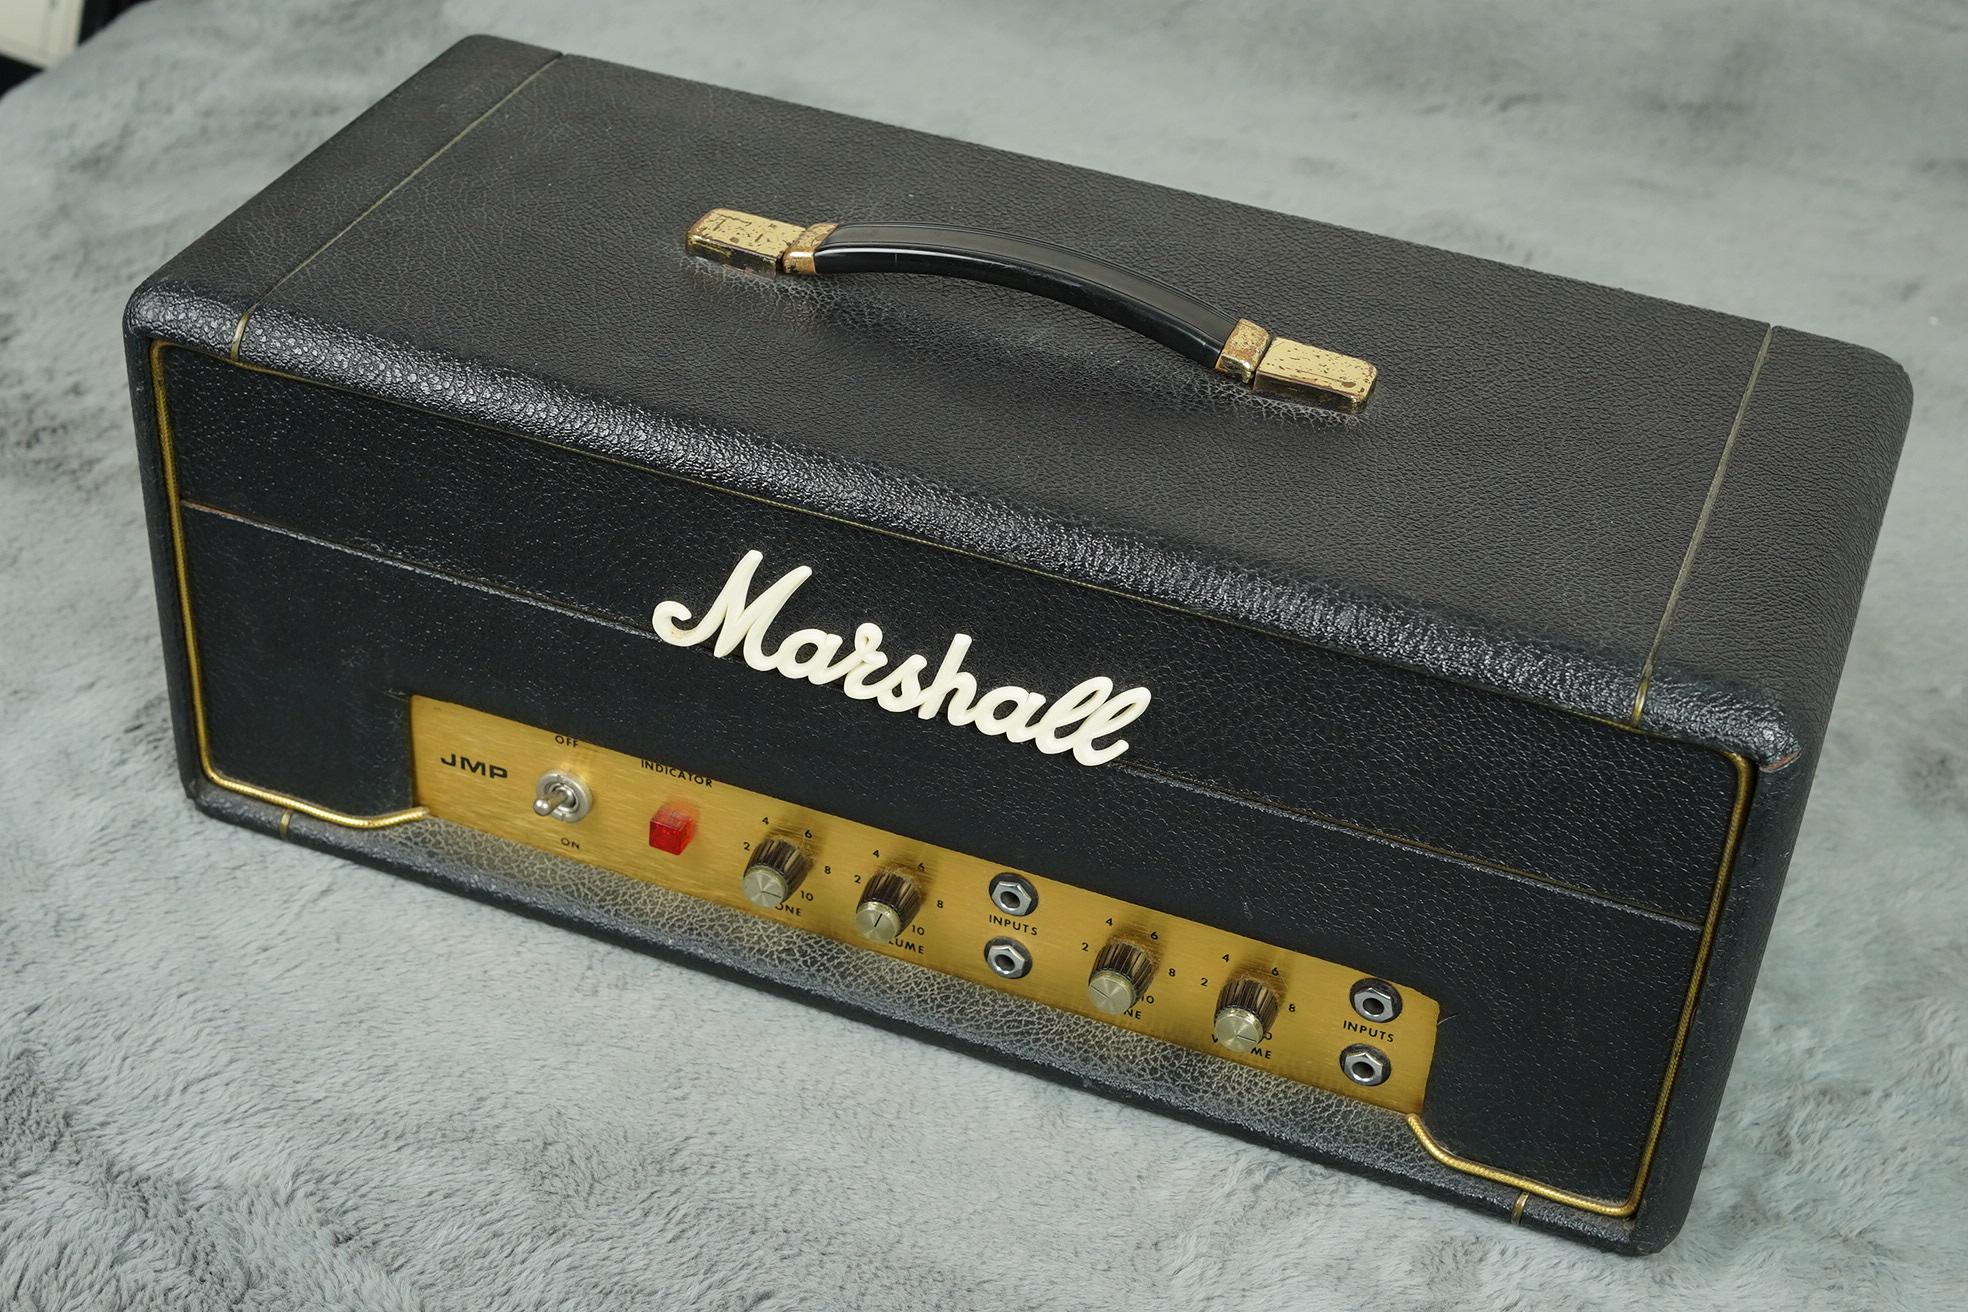 1971 Marshall PA20